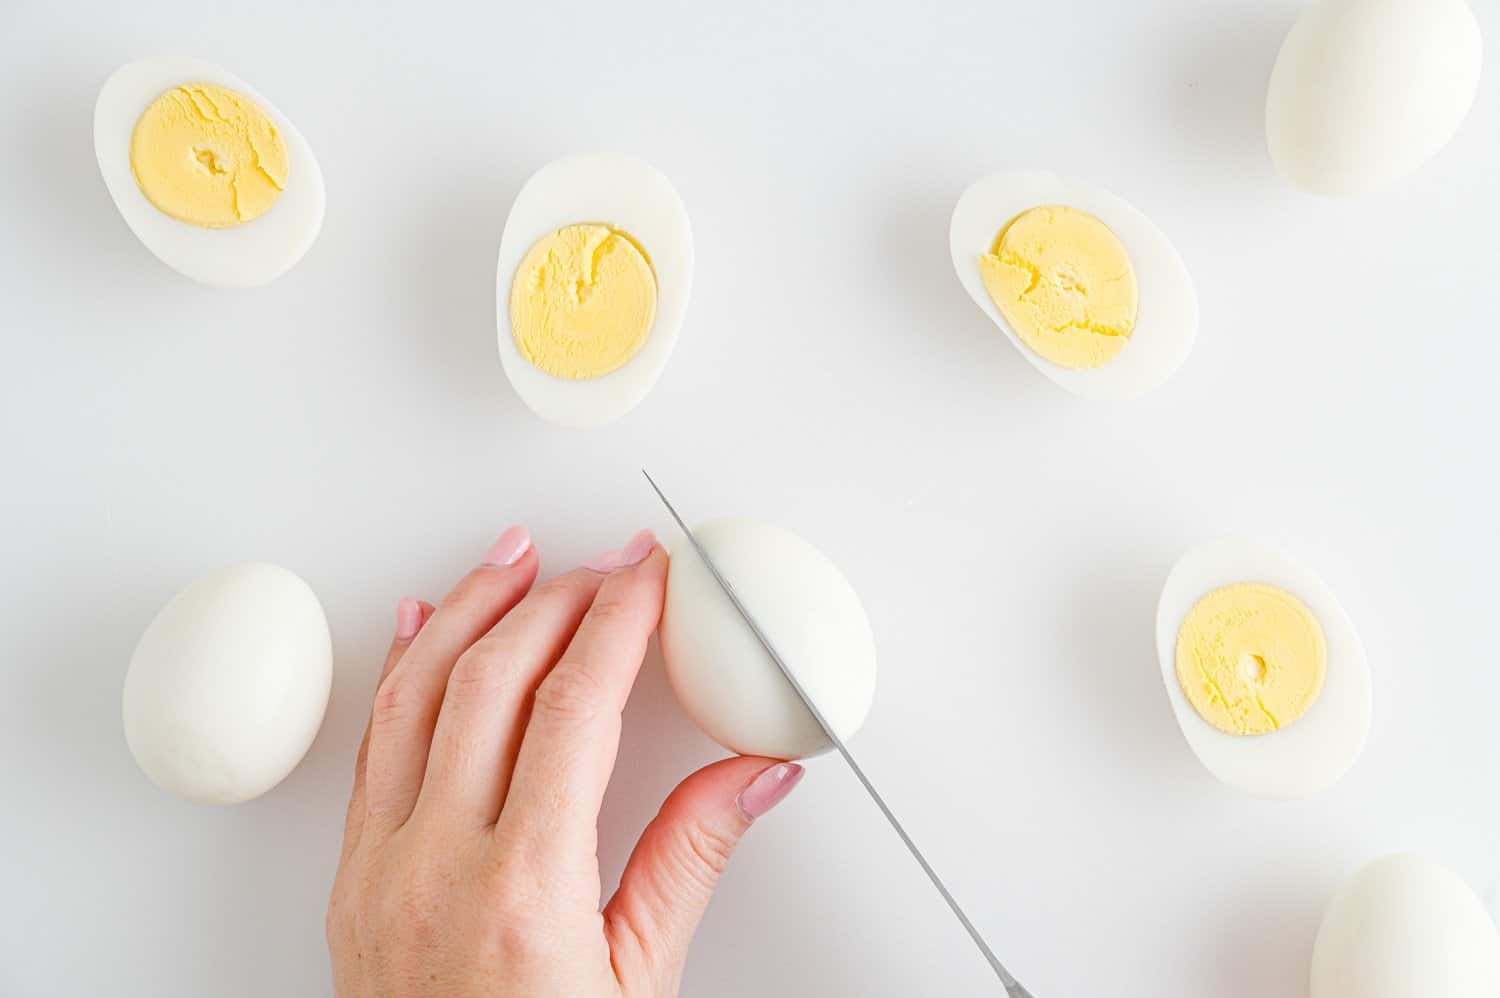 Boiled eggs being cut in half.